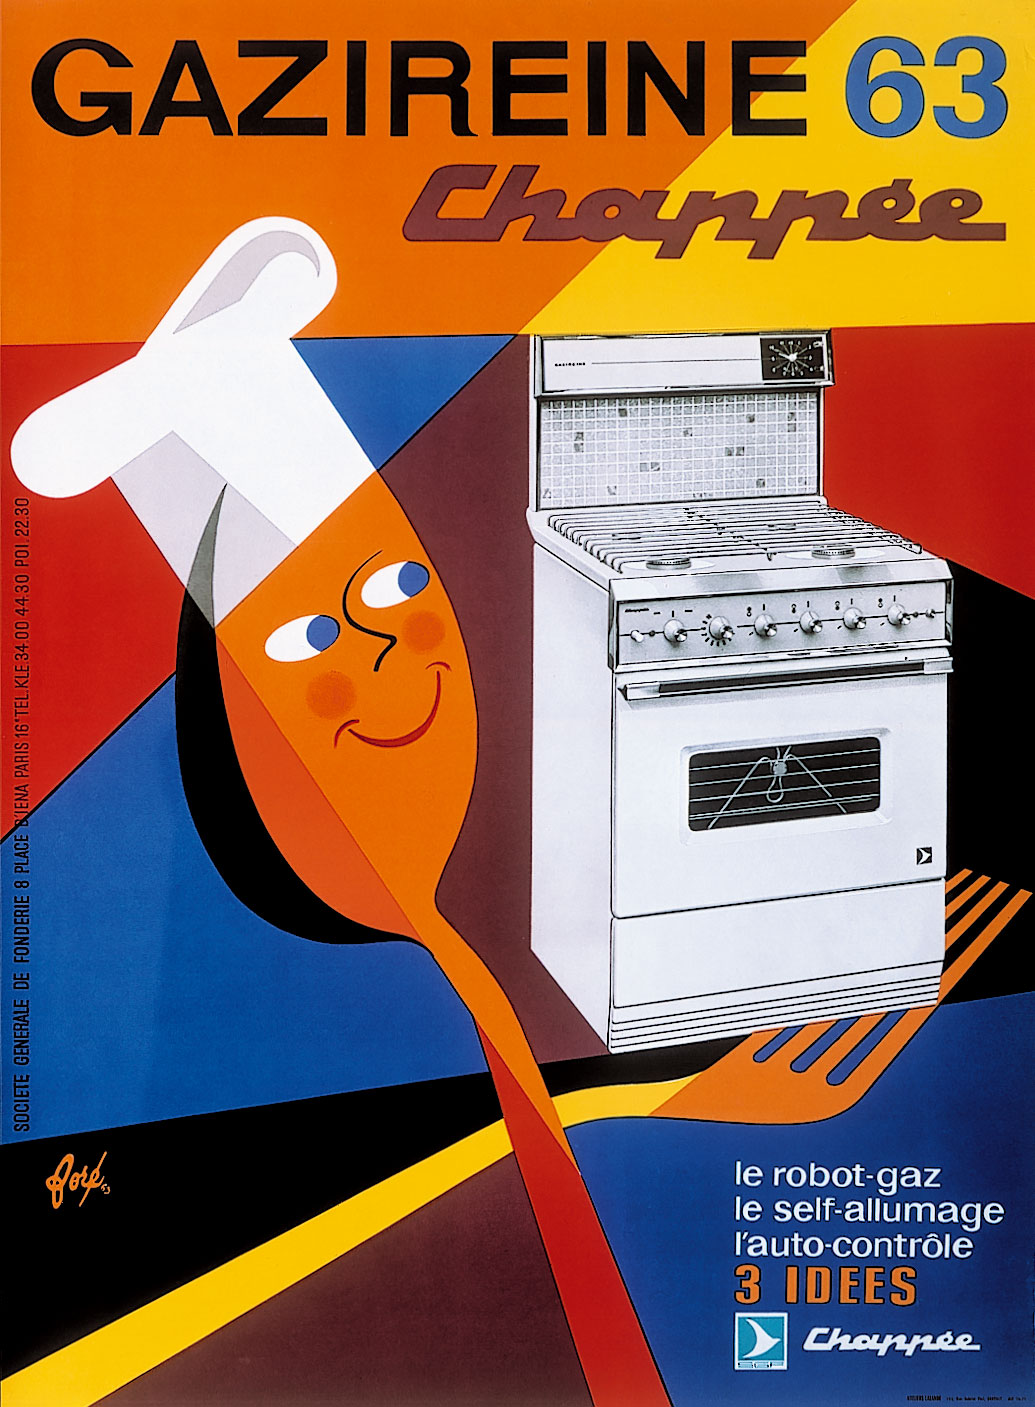 Affiche pour Chappée, la gazireine, 1963.